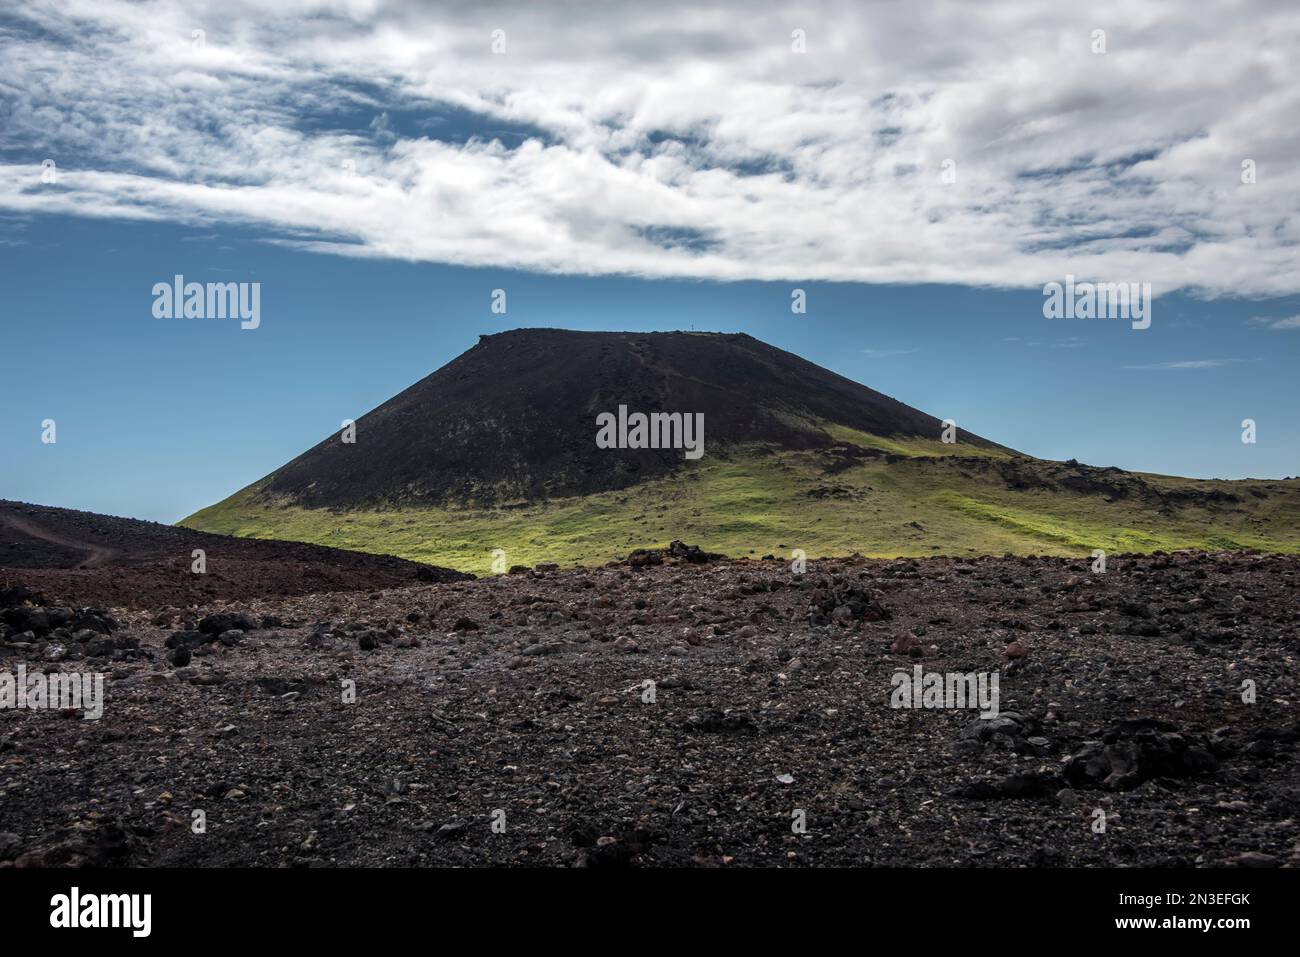 Il vulcano, Eldfell, sull'isola di Heimaey, parte delle Isole Westman, un arcipelago di circa 15 isole sulla costa meridionale dell'Islanda, forme... Foto Stock